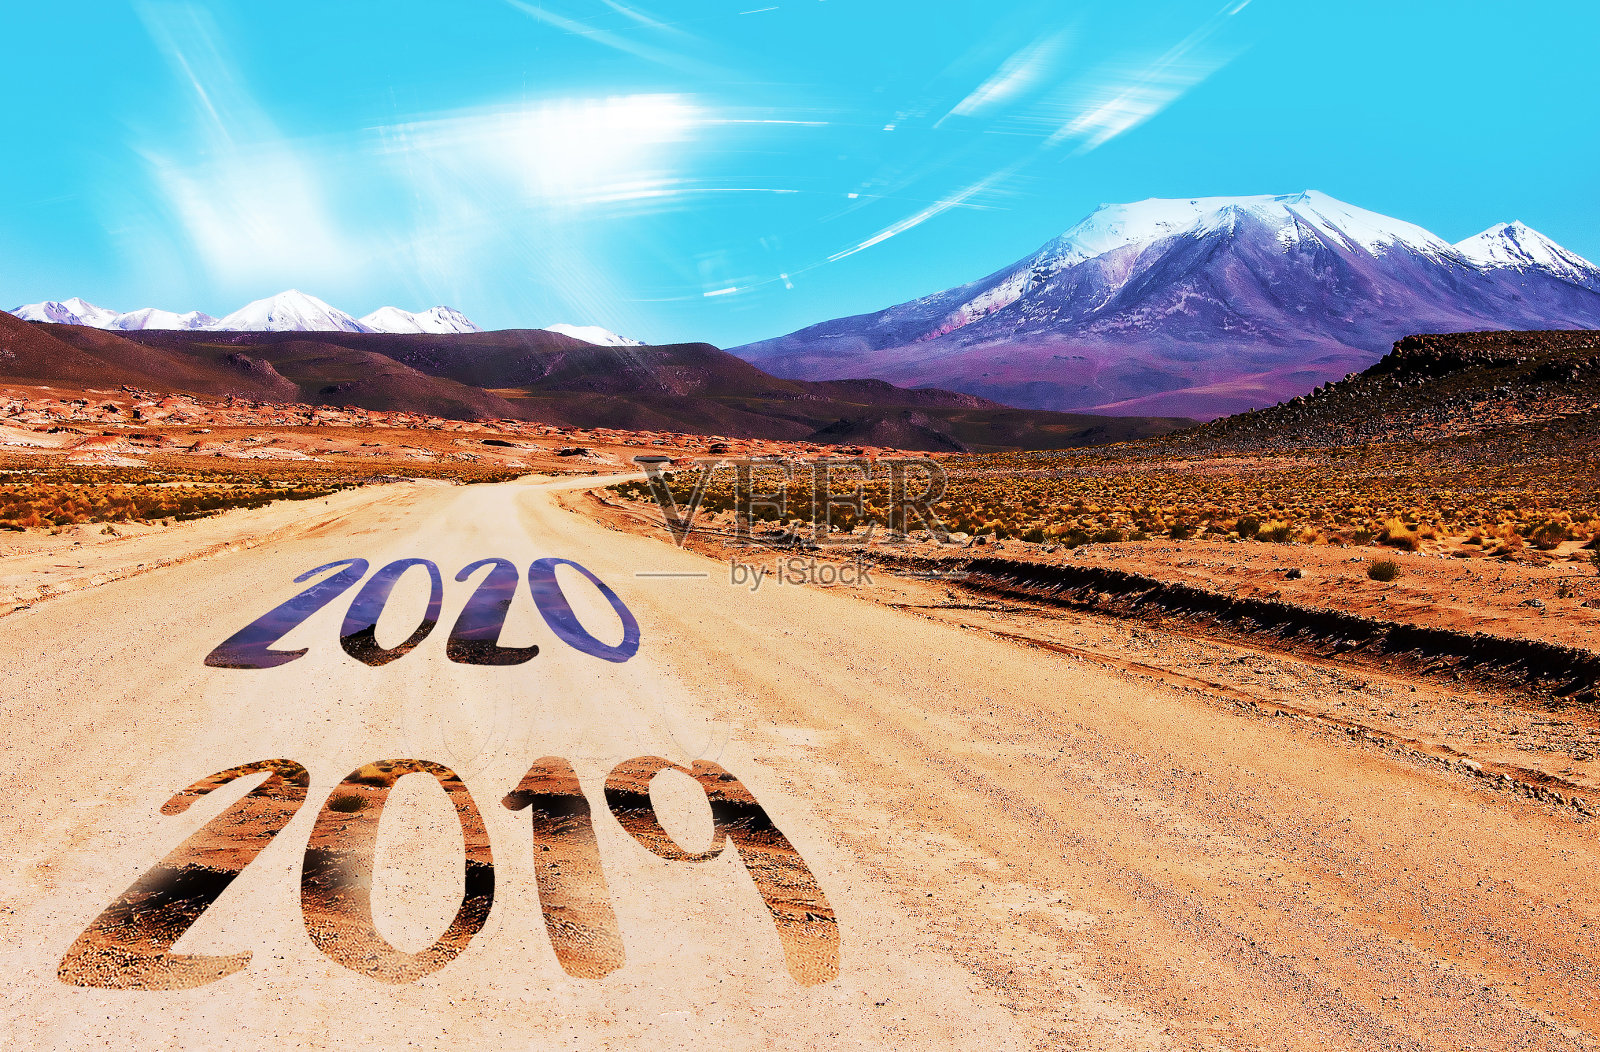 空旷的道路冲向远方。Сoming 2020新年旅游概念照片摄影图片